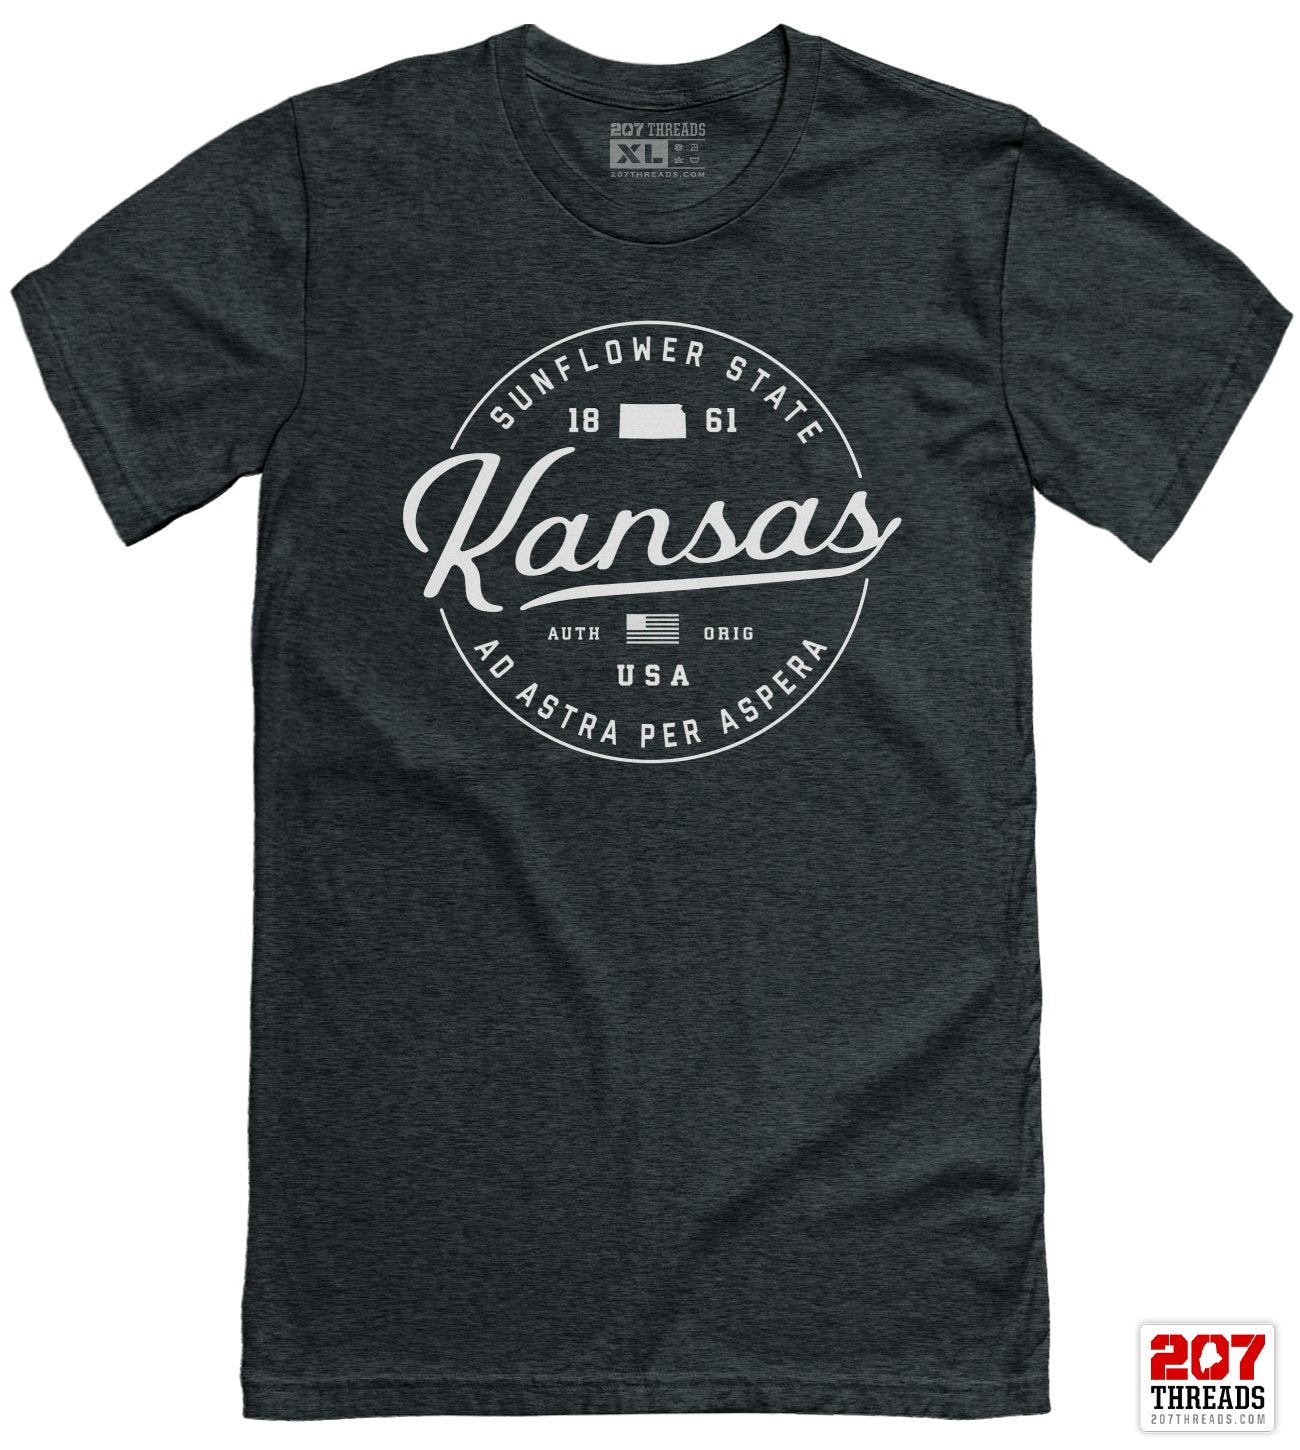 State of Kansas T-Shirt - Soft Kansas Tee